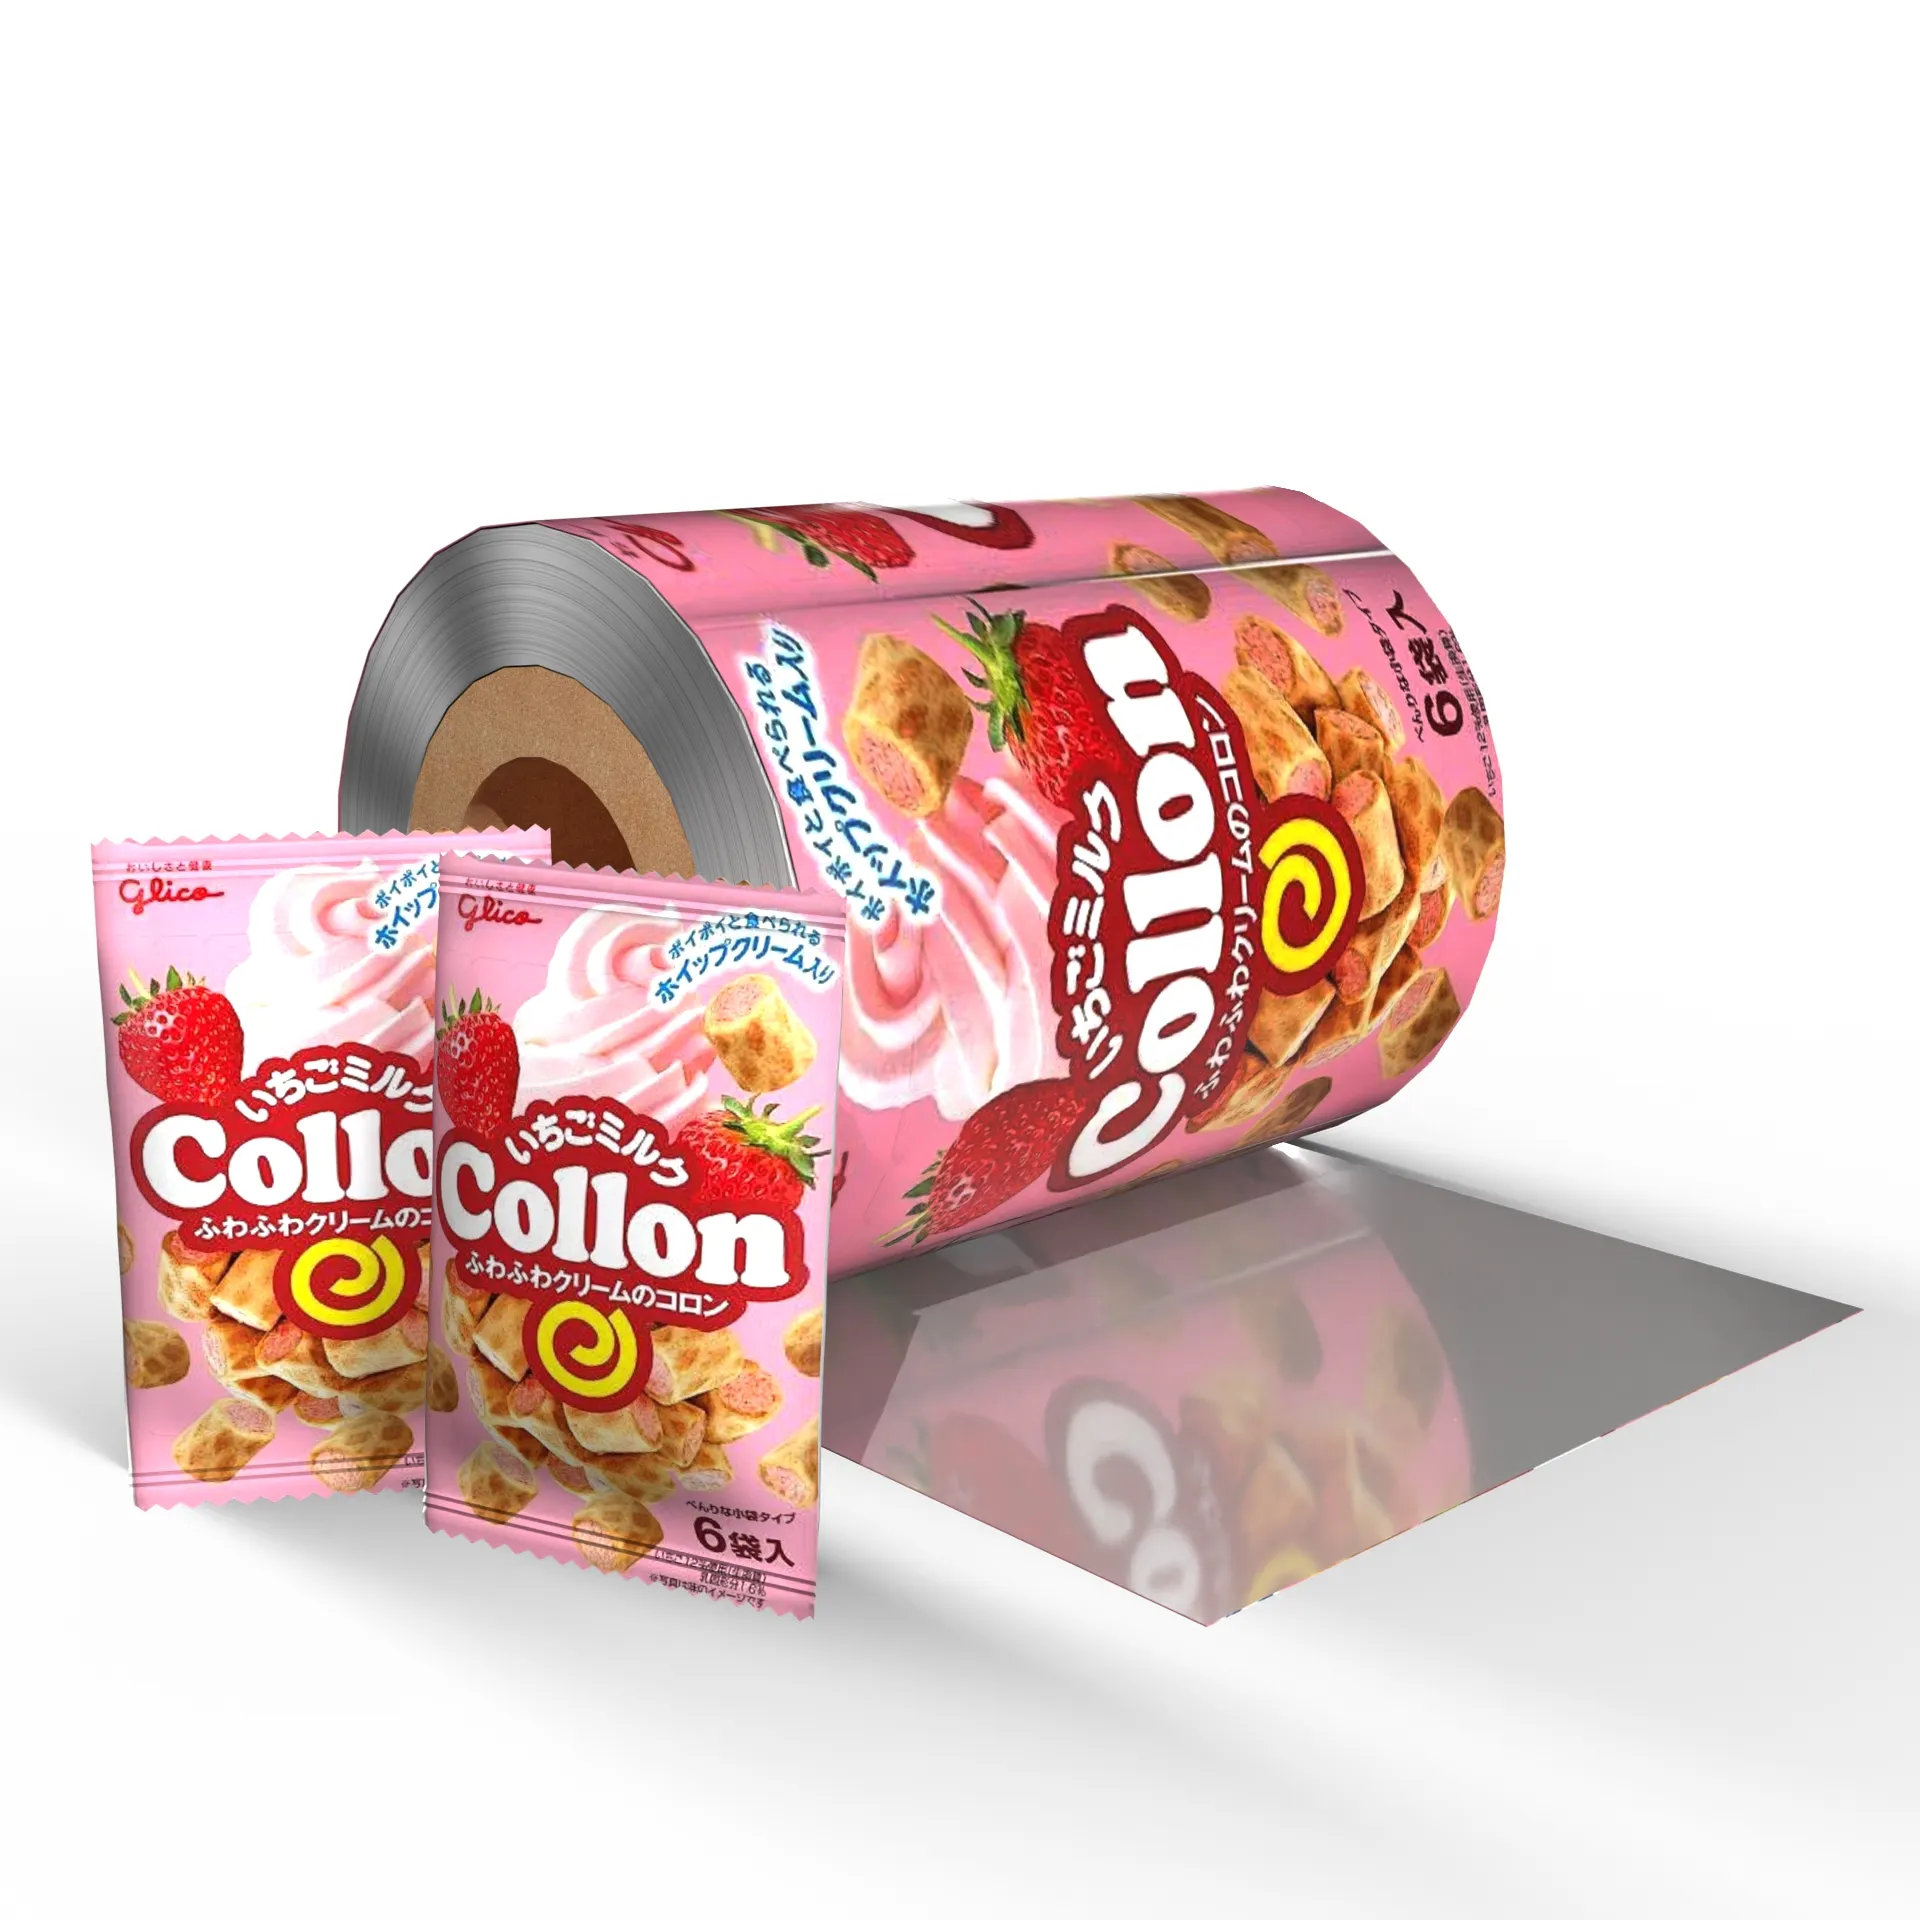 Bustina stampata personalizzata rotolo di pellicola di plastica noci caramelle biscotti confezione bustina rotolo di pellicola